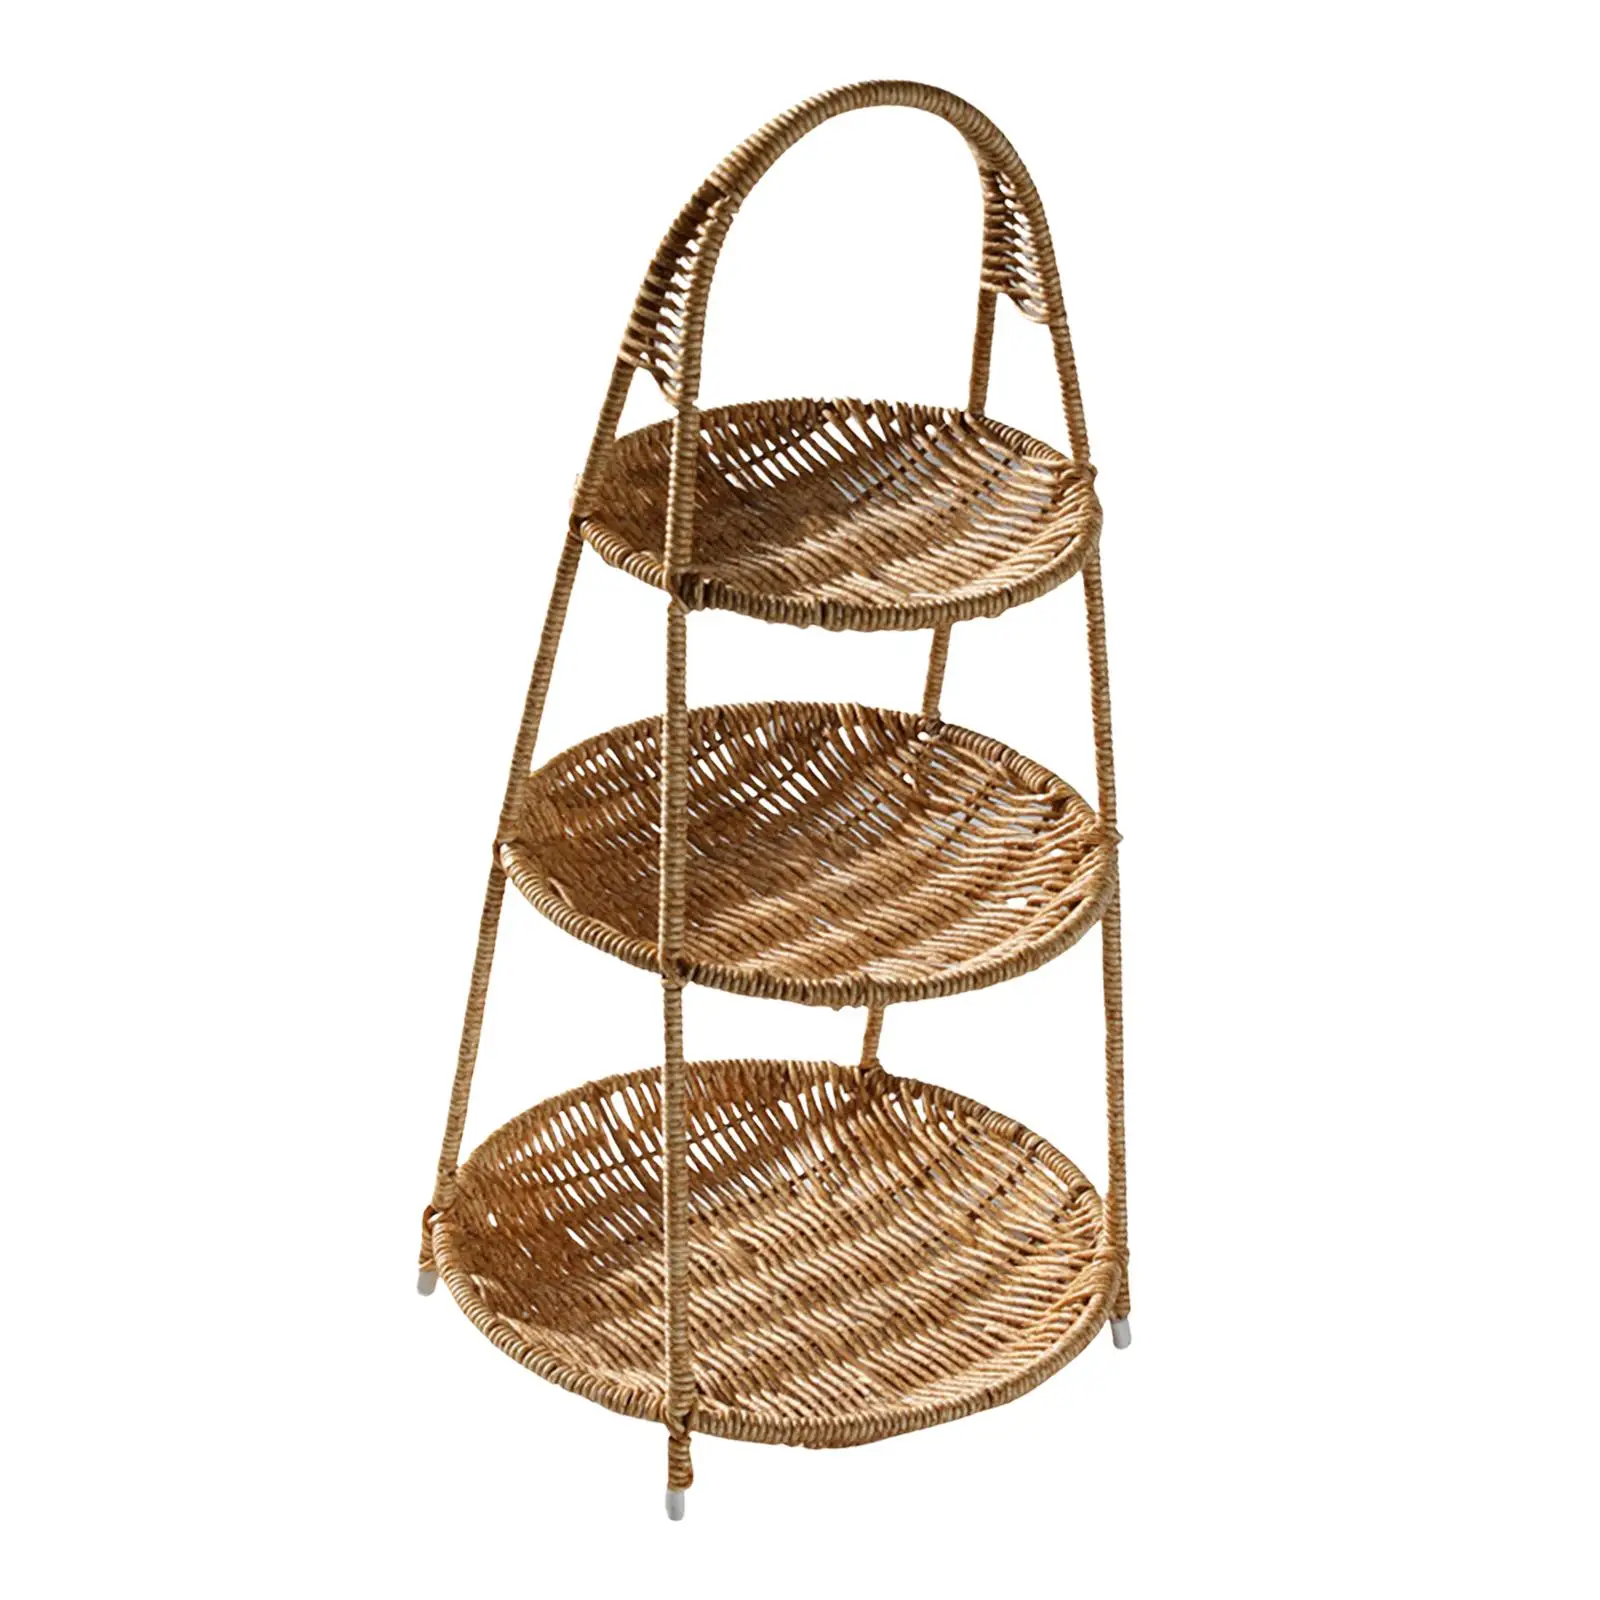 Handwoven Weaving Basket Rack Makeup Organizer Shelf Vegetable Storage Stand Fruit Rack Decoration Snack Tray for Celebration